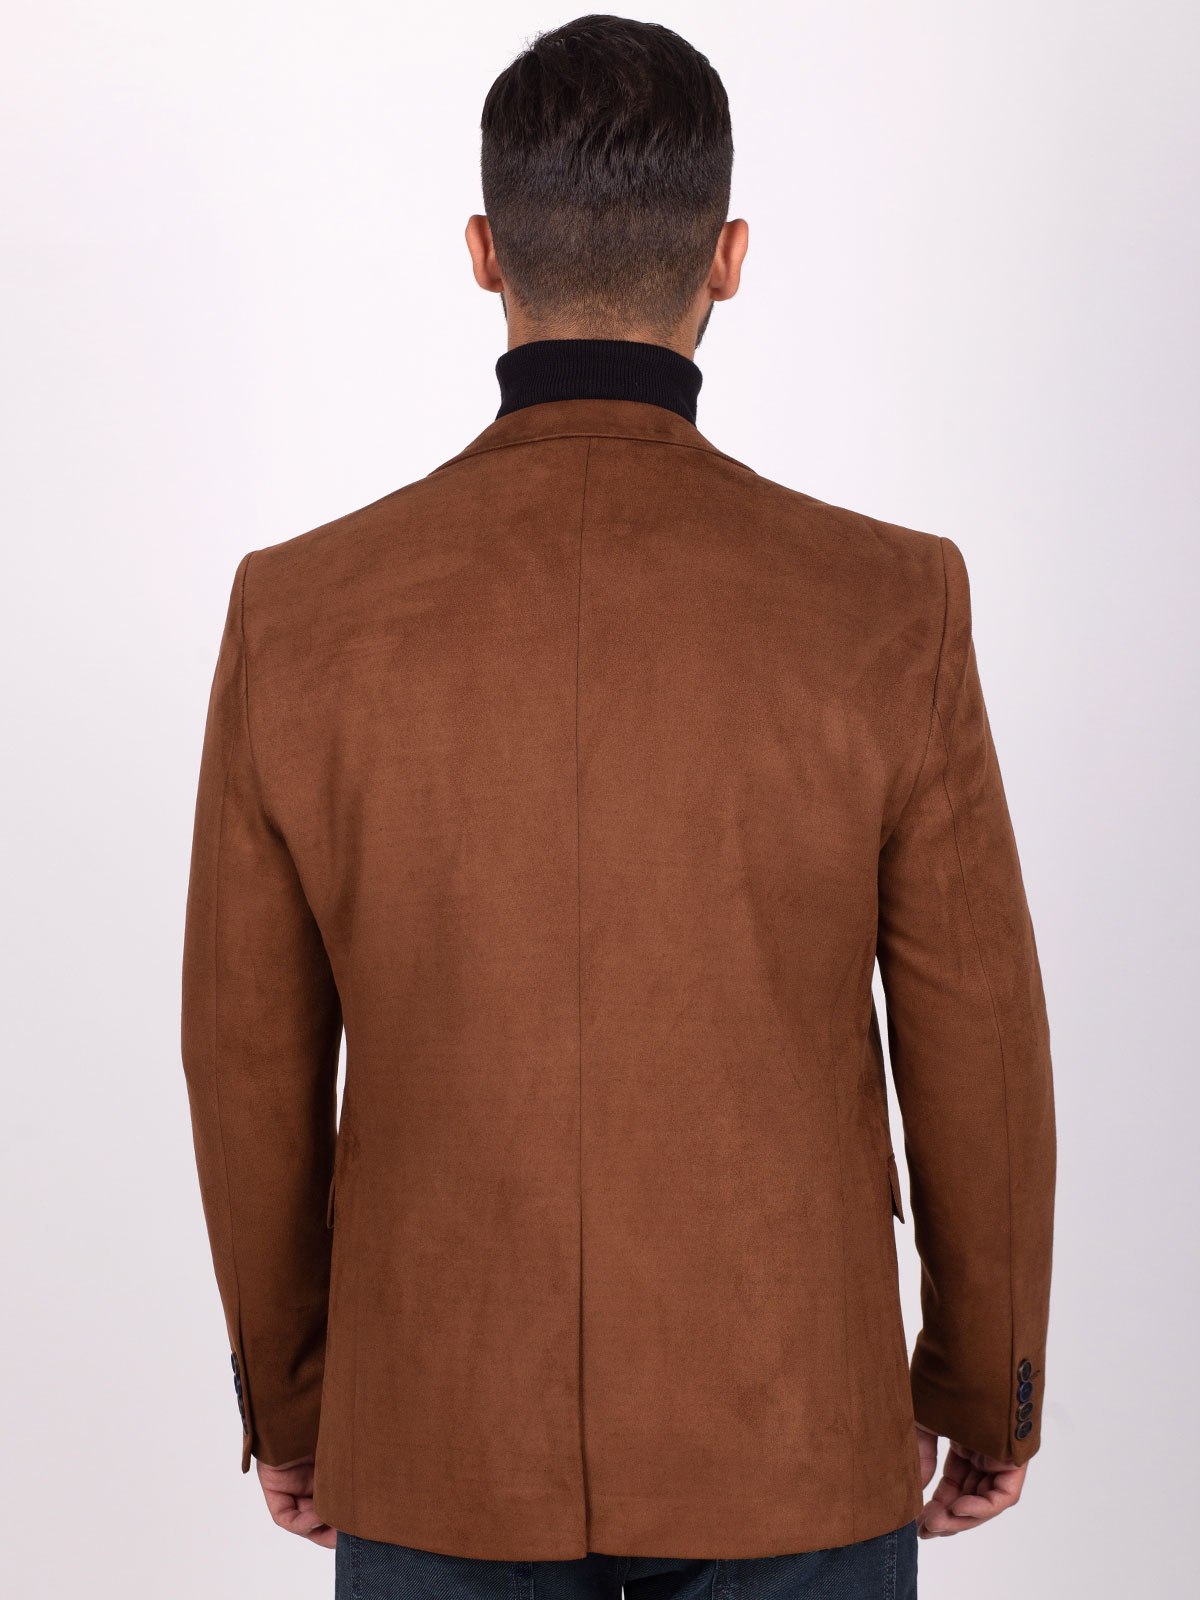 Jachetă croită din piele intoarsa maro - 61084 € 72.55 img4